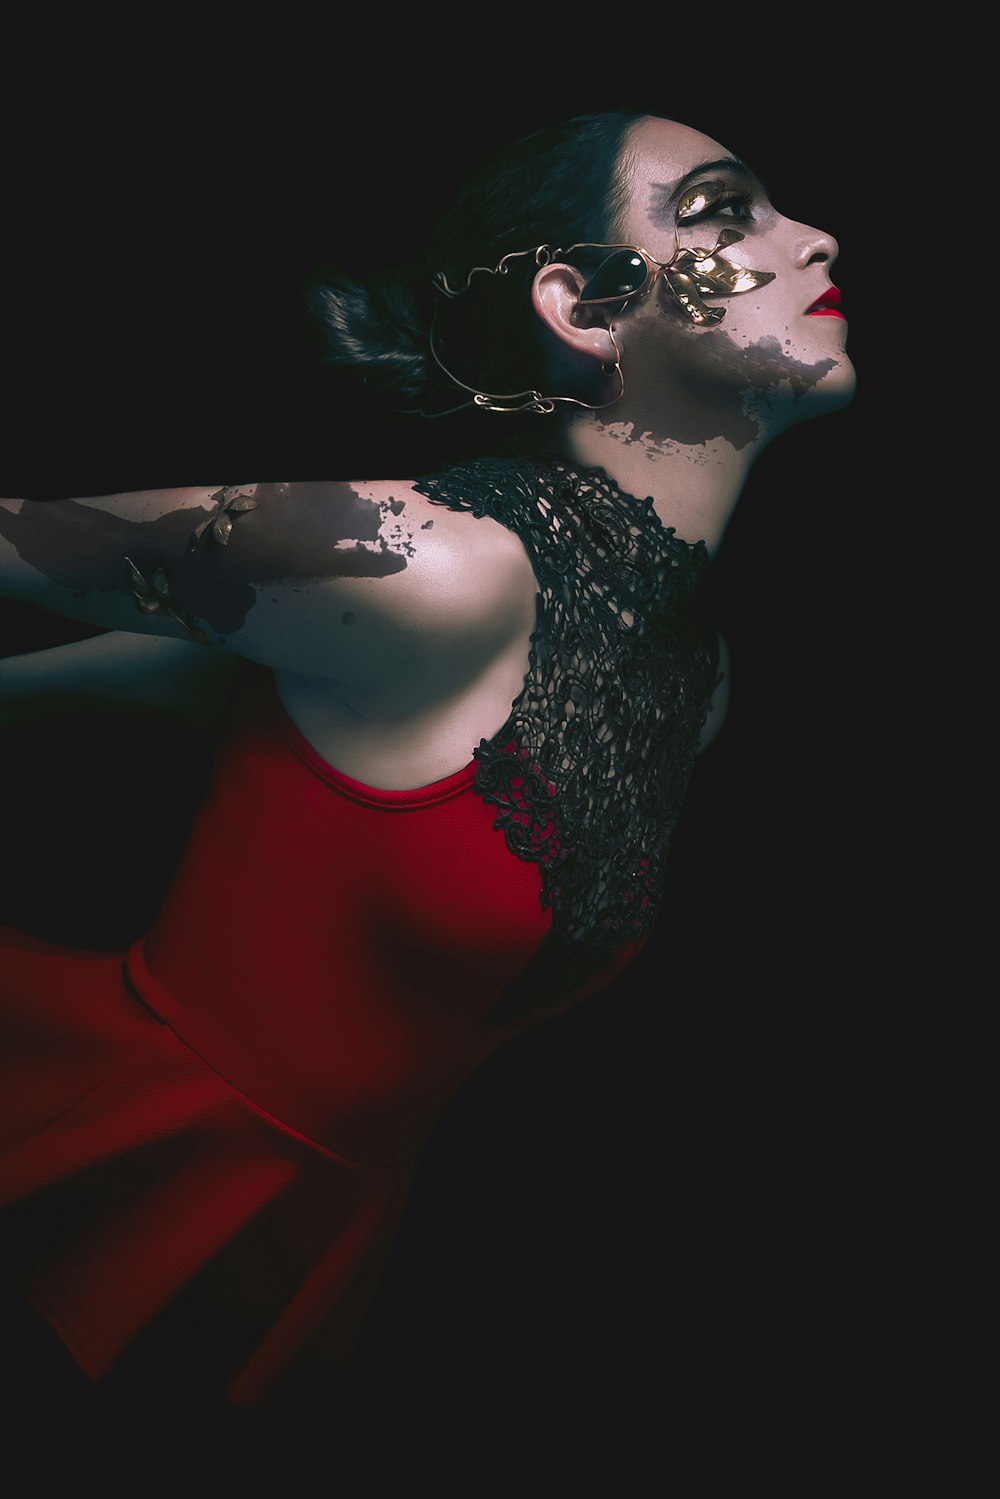 Eine Frau in einem roten Kleid mit Tattoos auf dem Arm